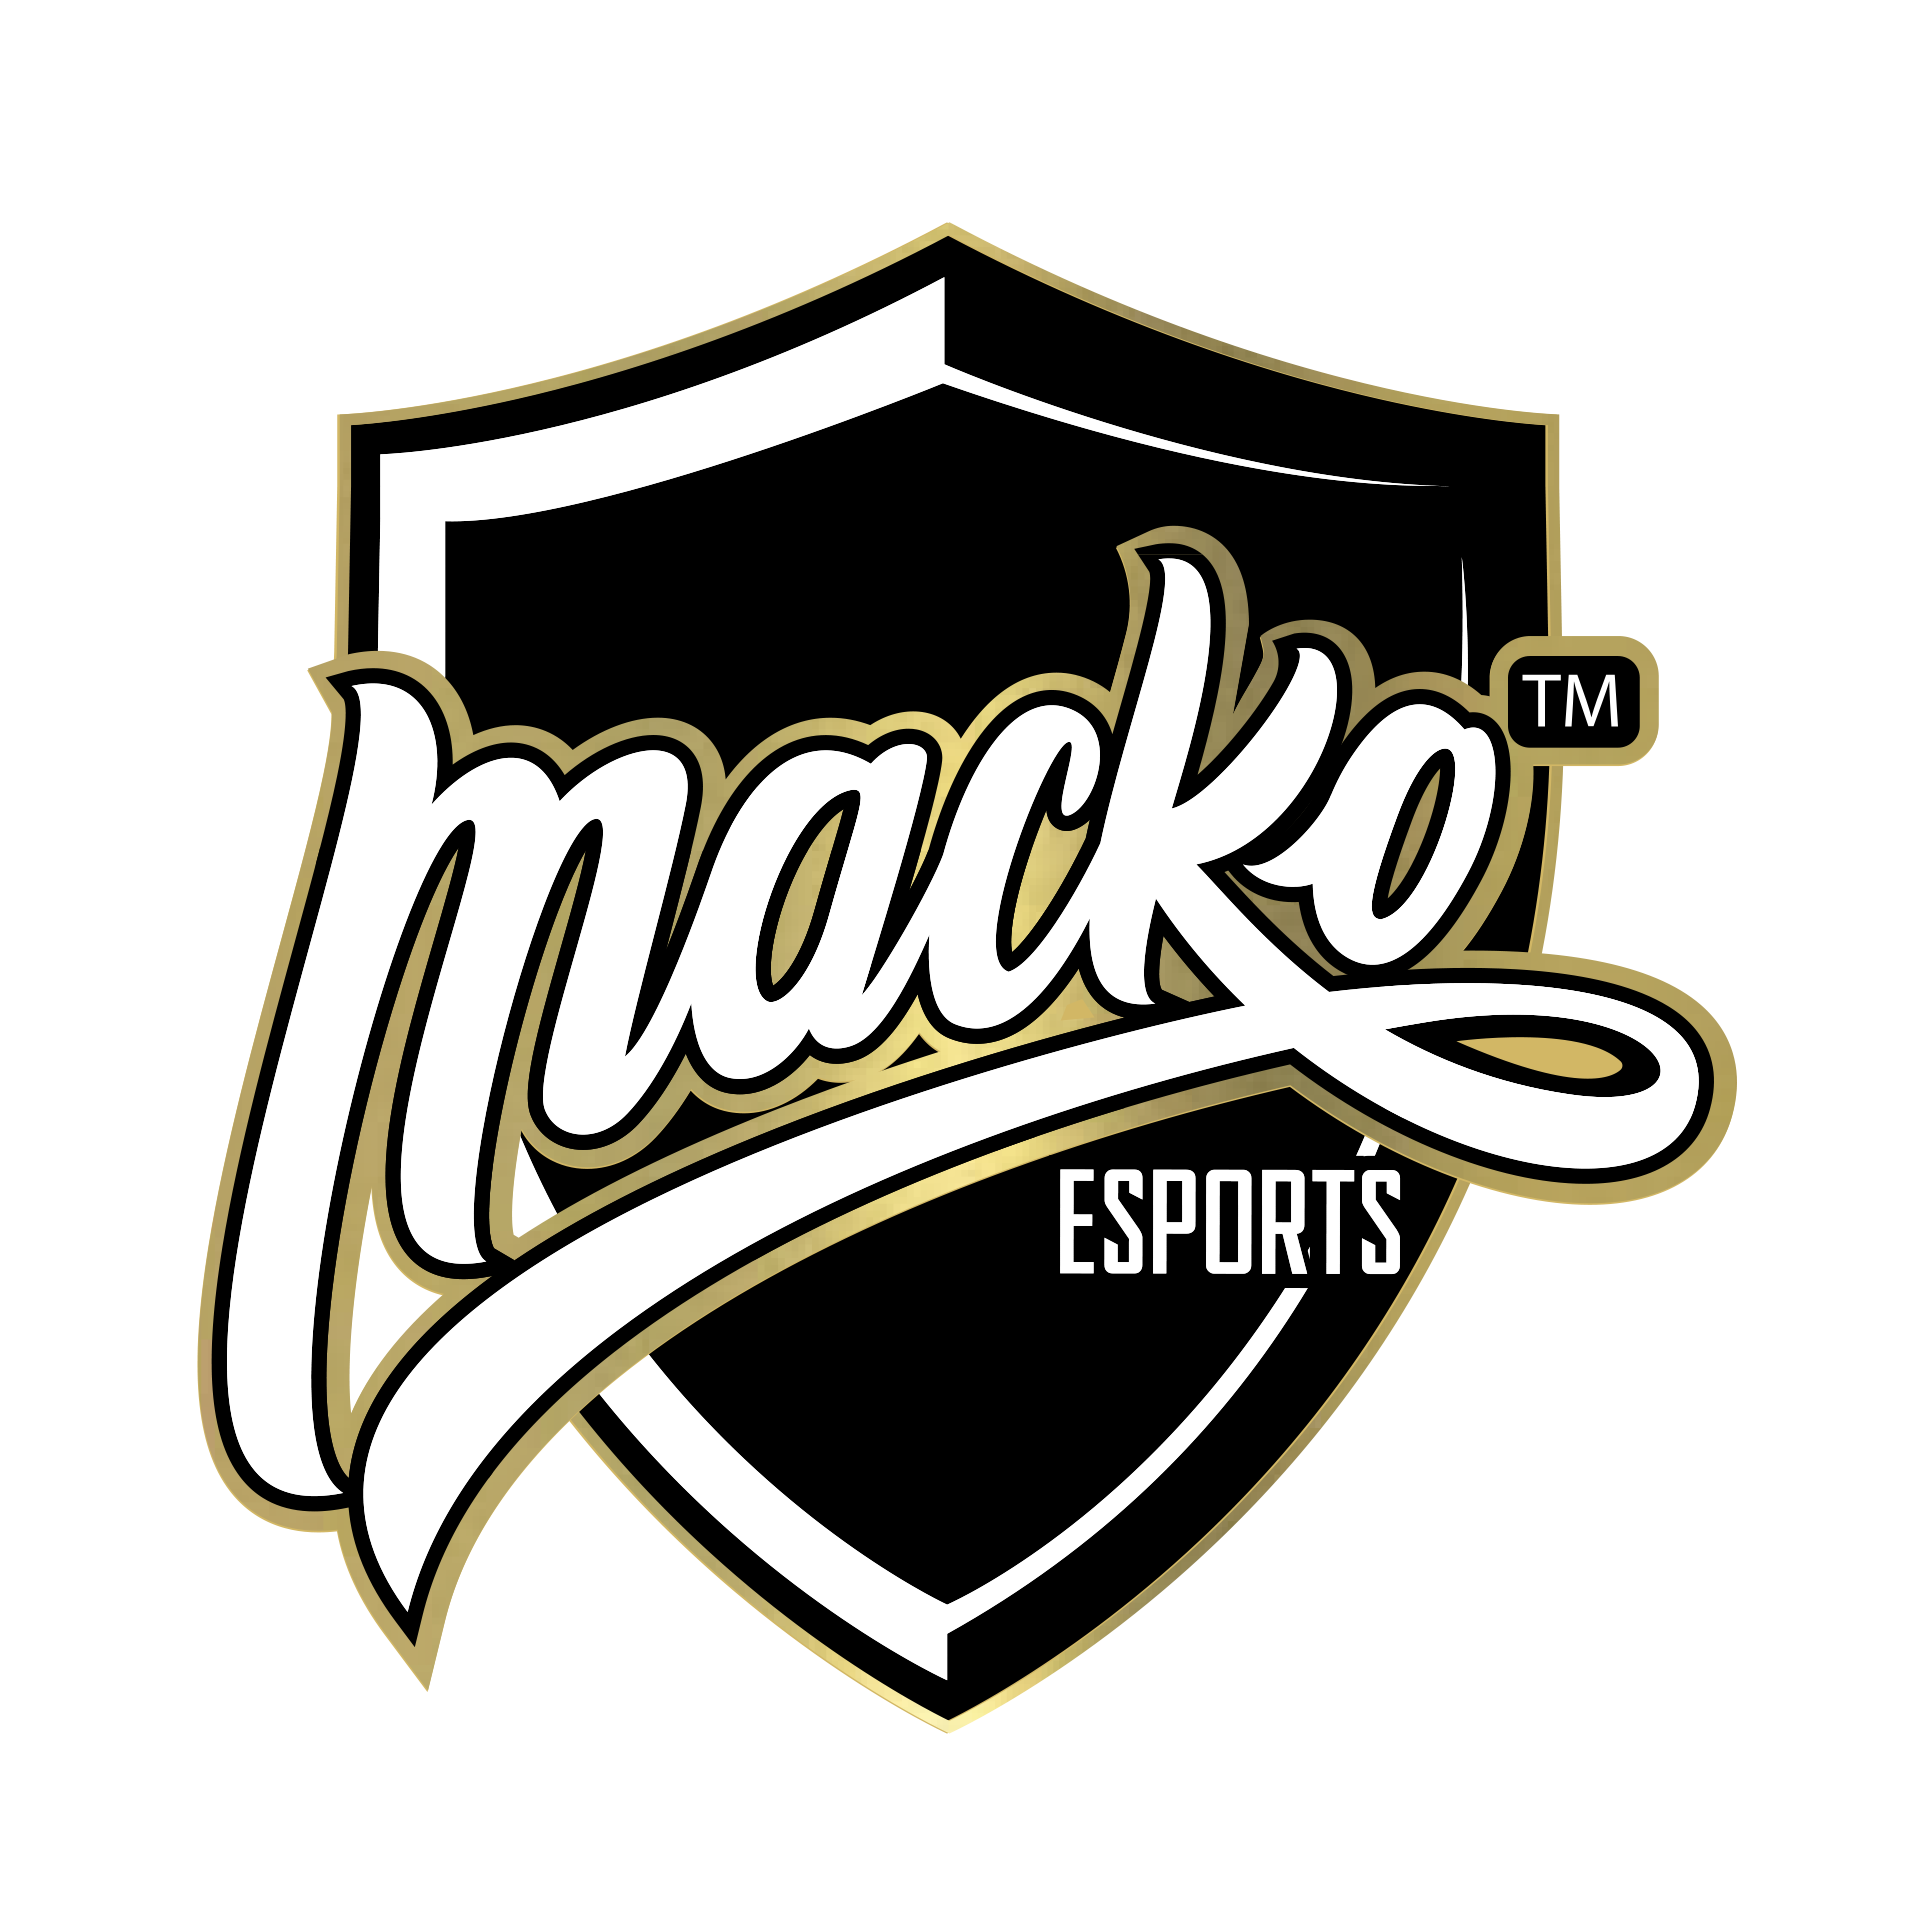 Macko esports logo